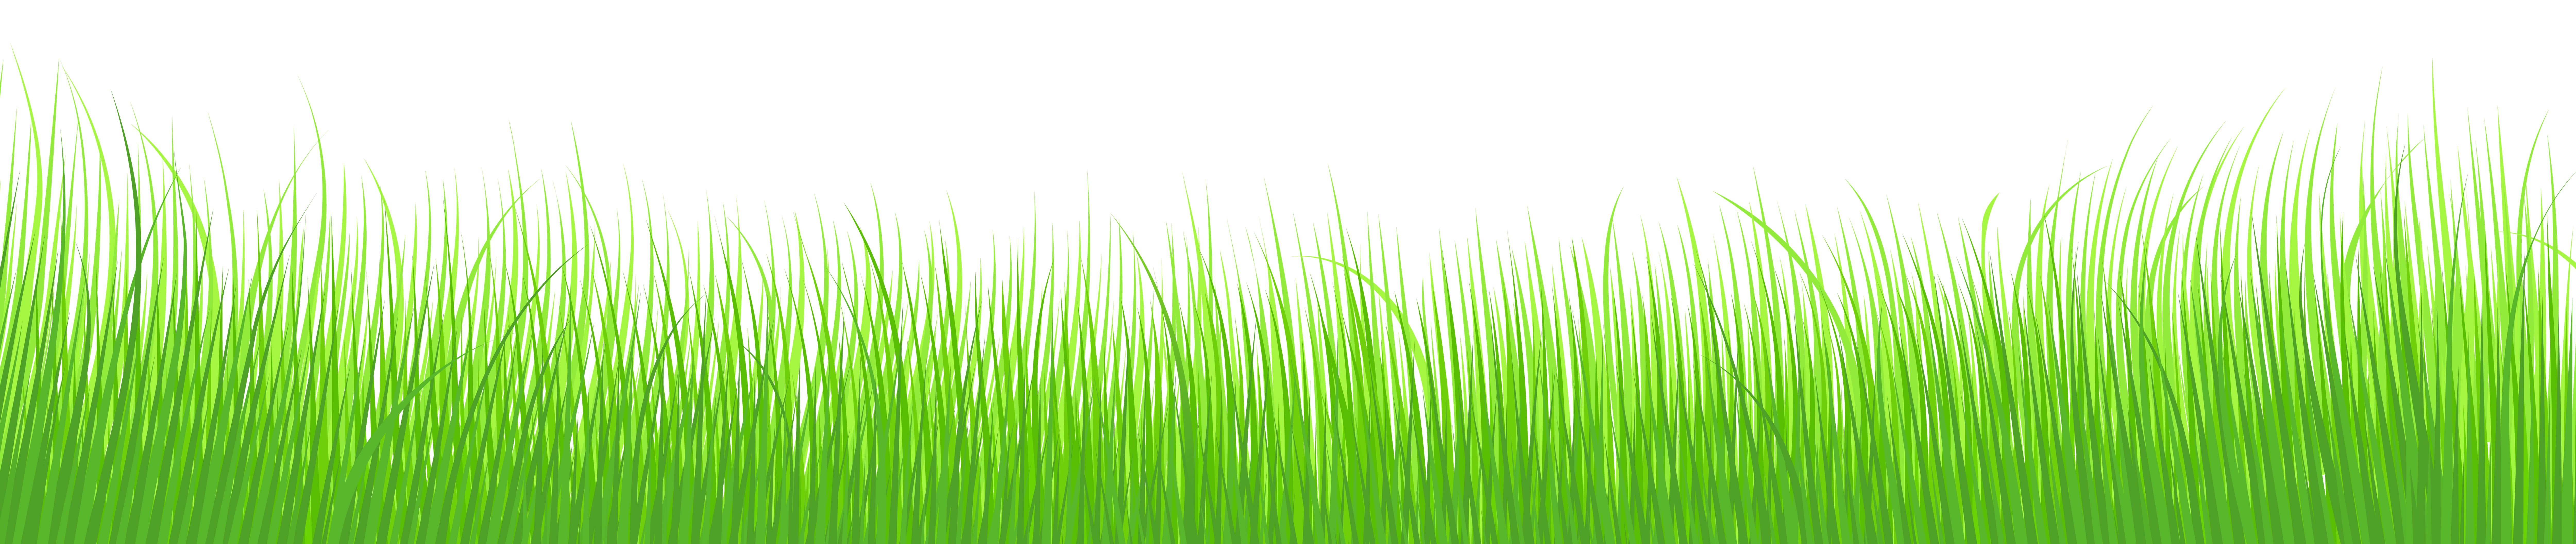 Clipart of green grass